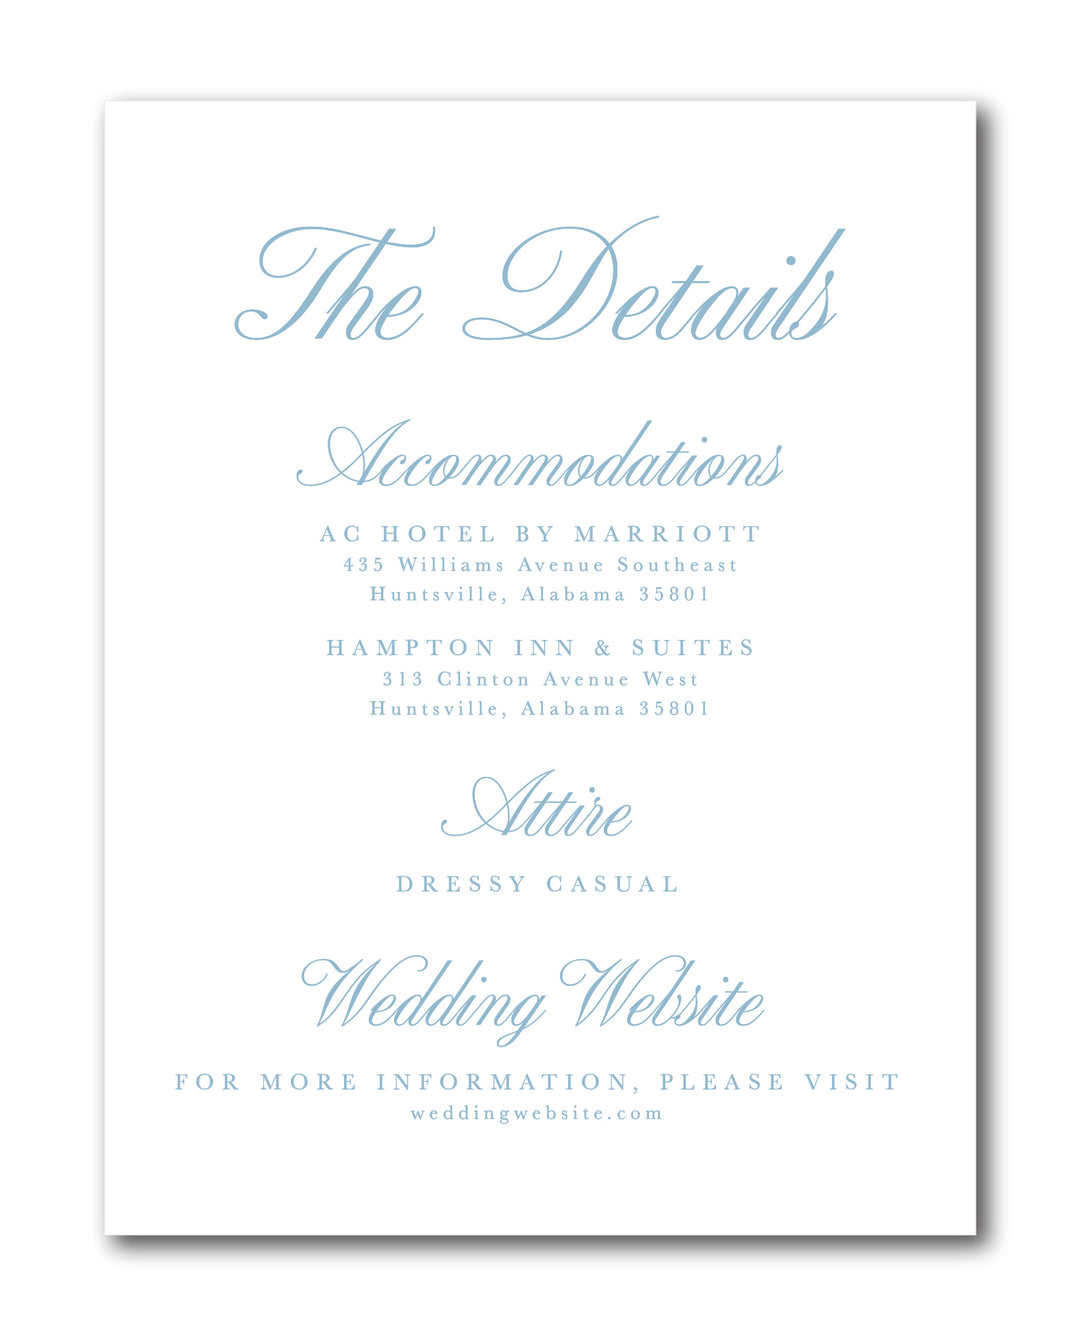 The Leigh Ann Wedding Invitation